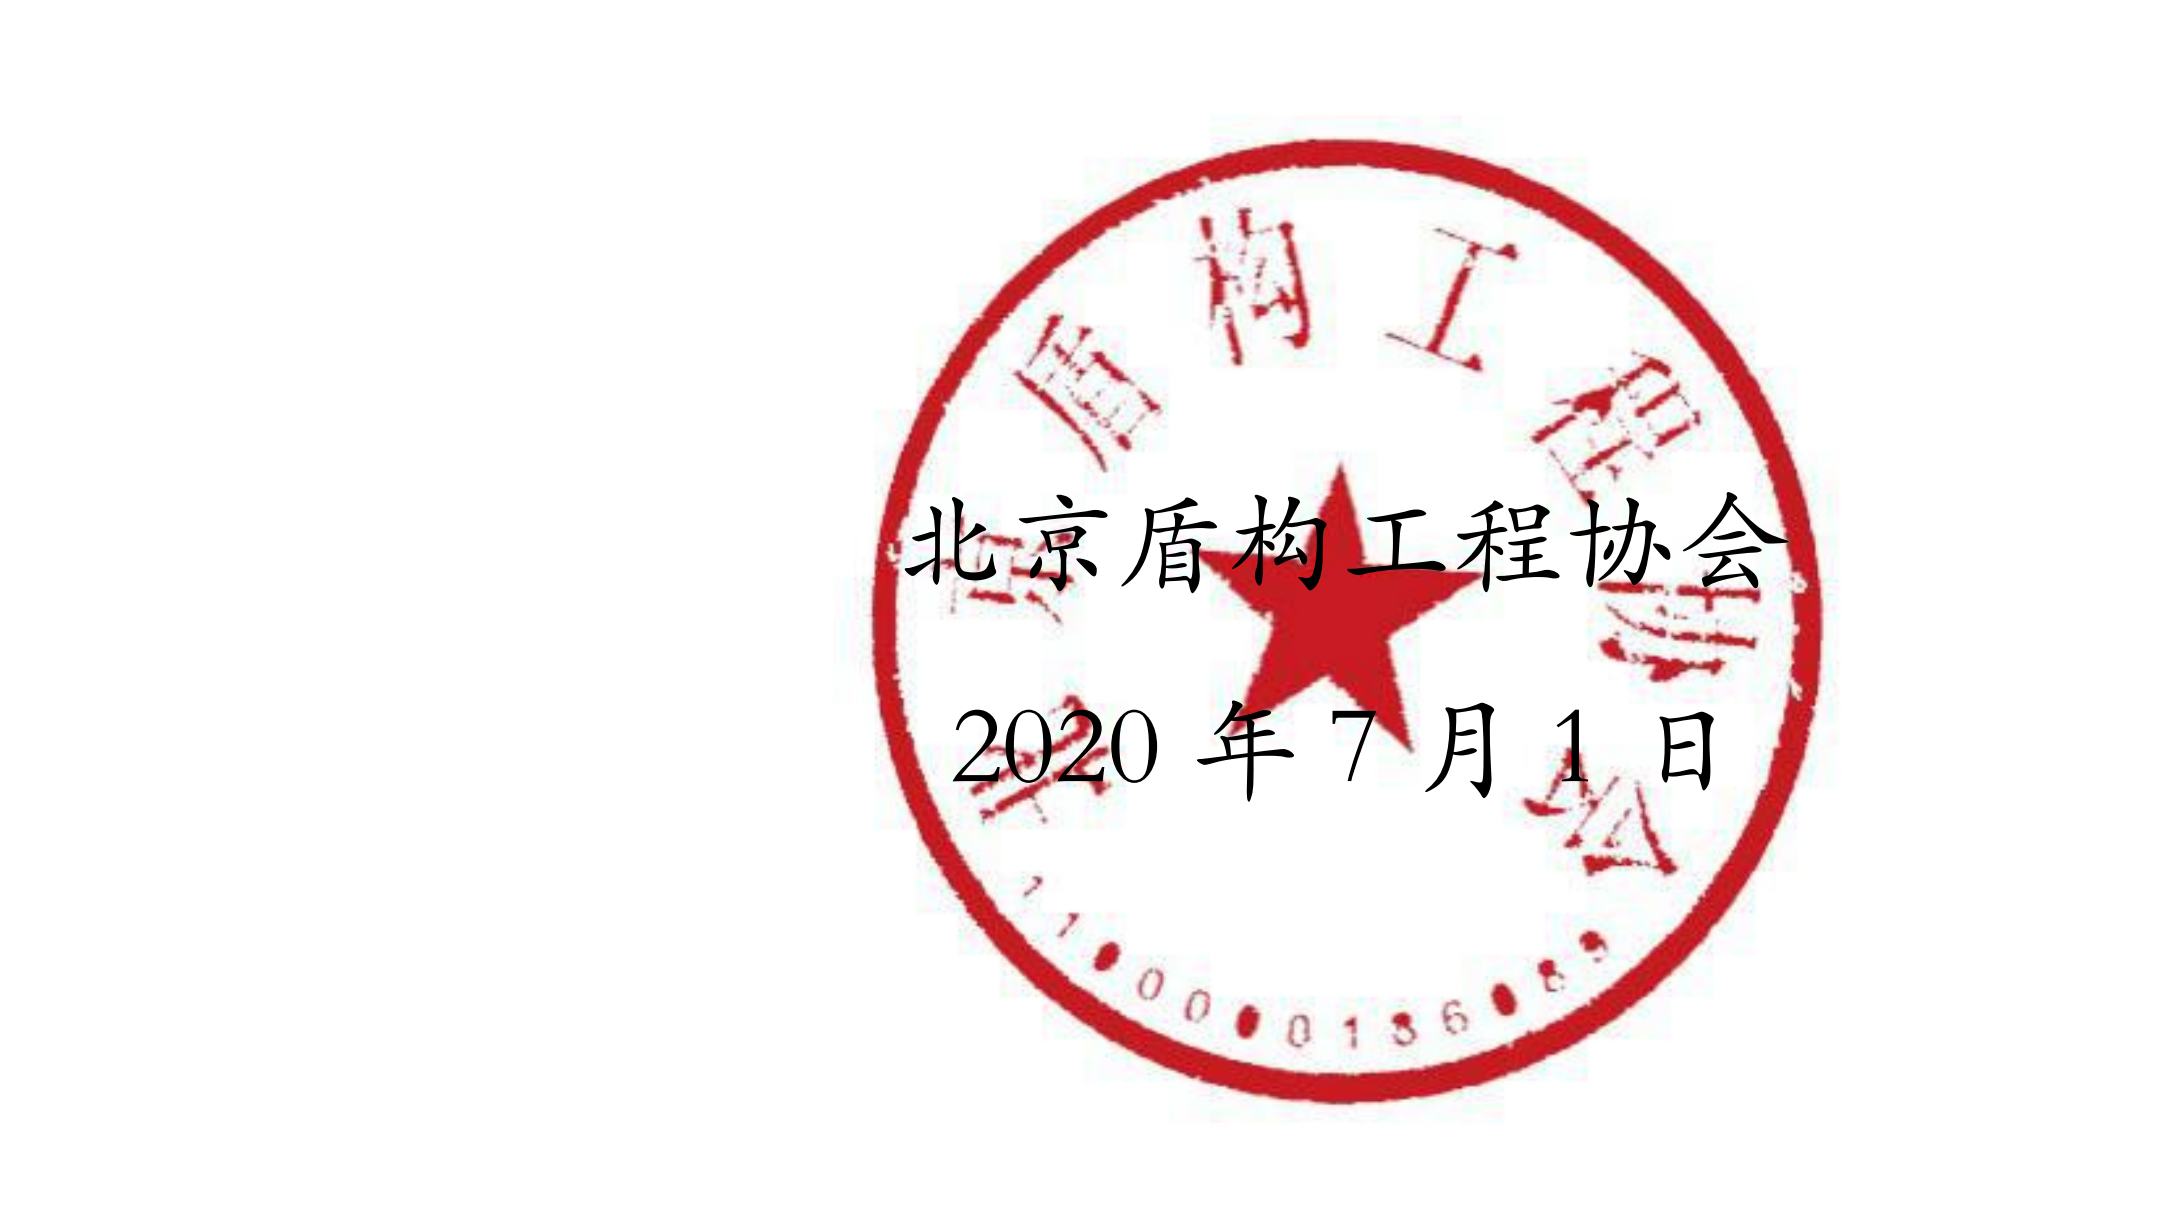 红头【2020】7号文件-关于征集2020年度团体标准主、参编单位的通知_02_副本.jpg